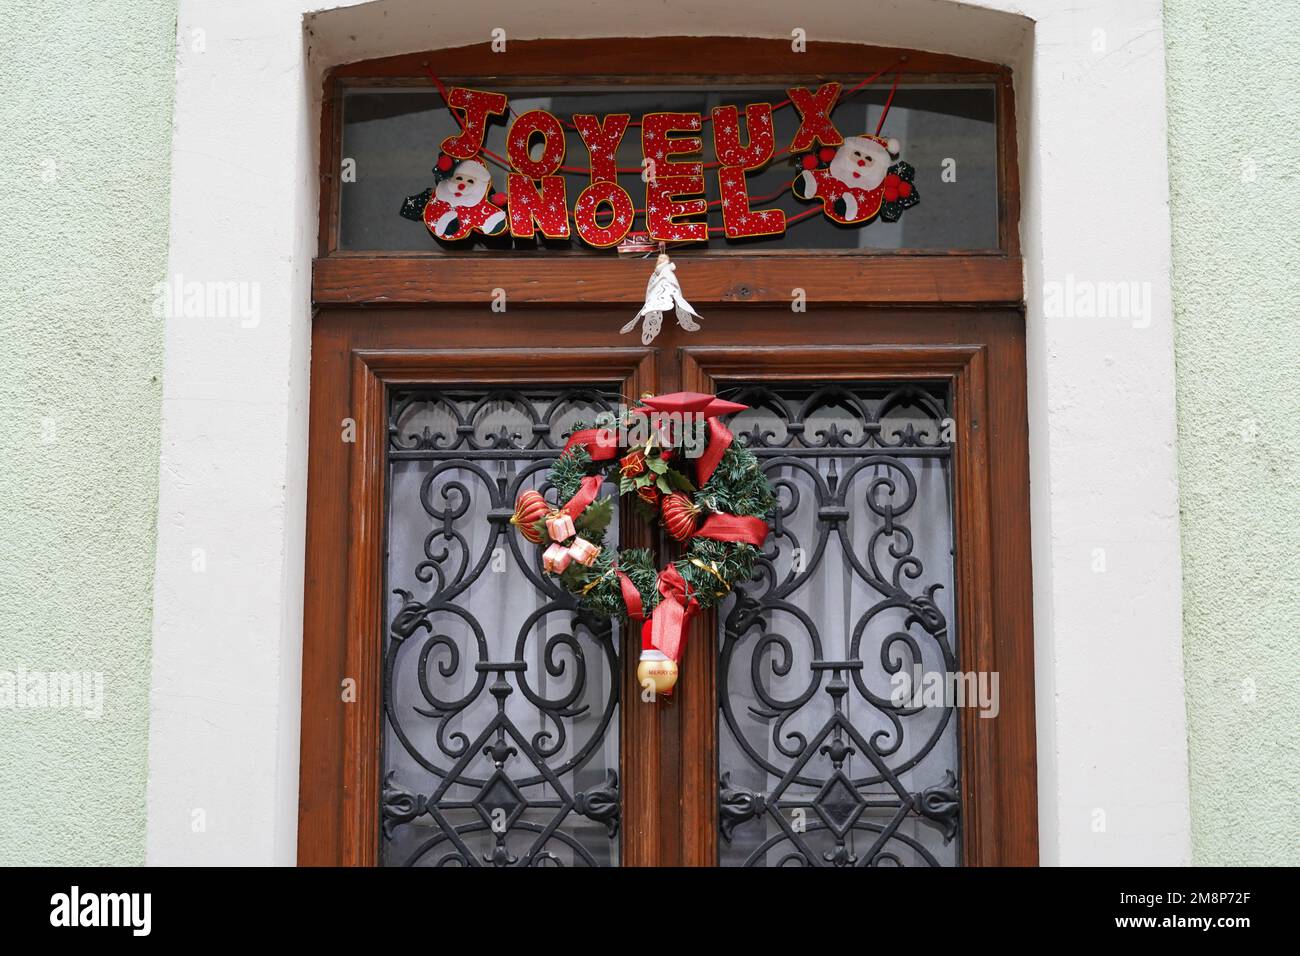 Porte en bois d'une maison en France avec décoration de Noël et inscription en langue française disant Joyeux Noël. Banque D'Images